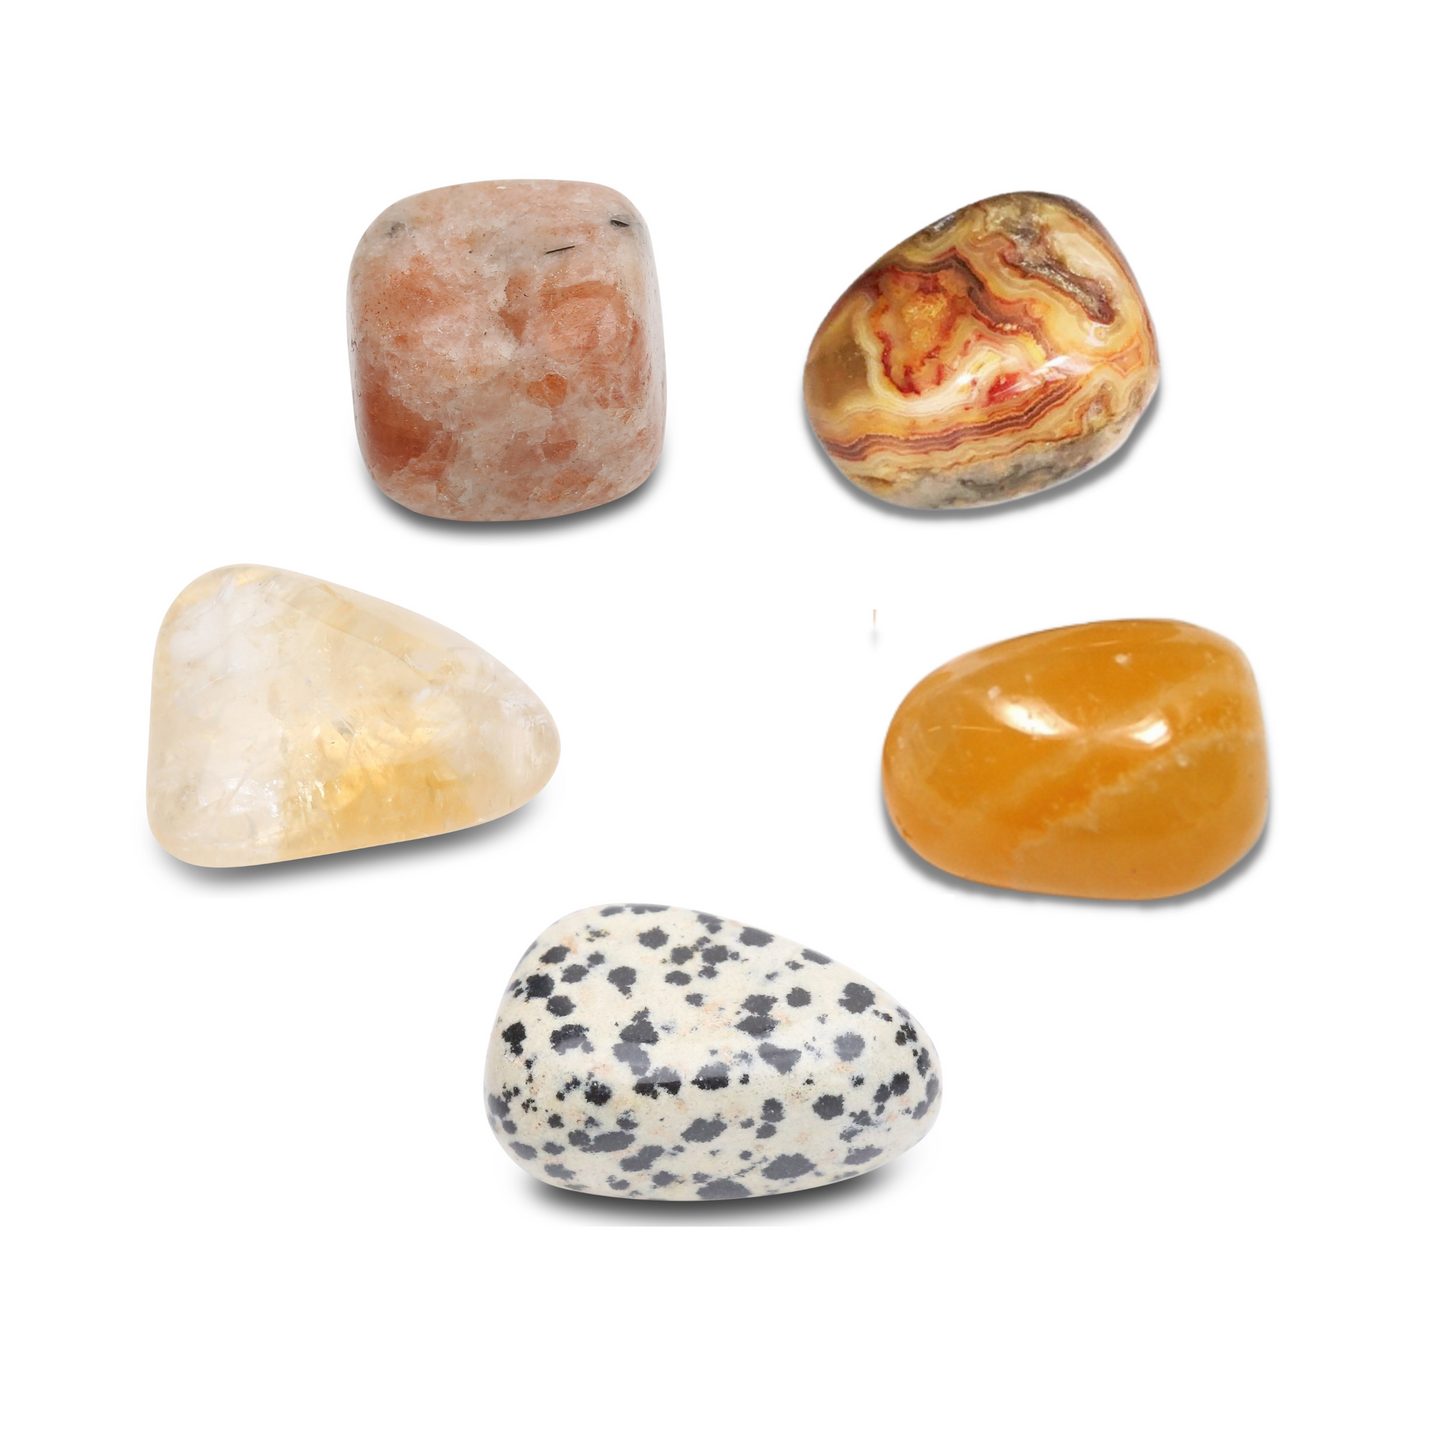 Kit de 5 pierres “Retrouver ma Joie Intérieure” - Karma Yoga Shop